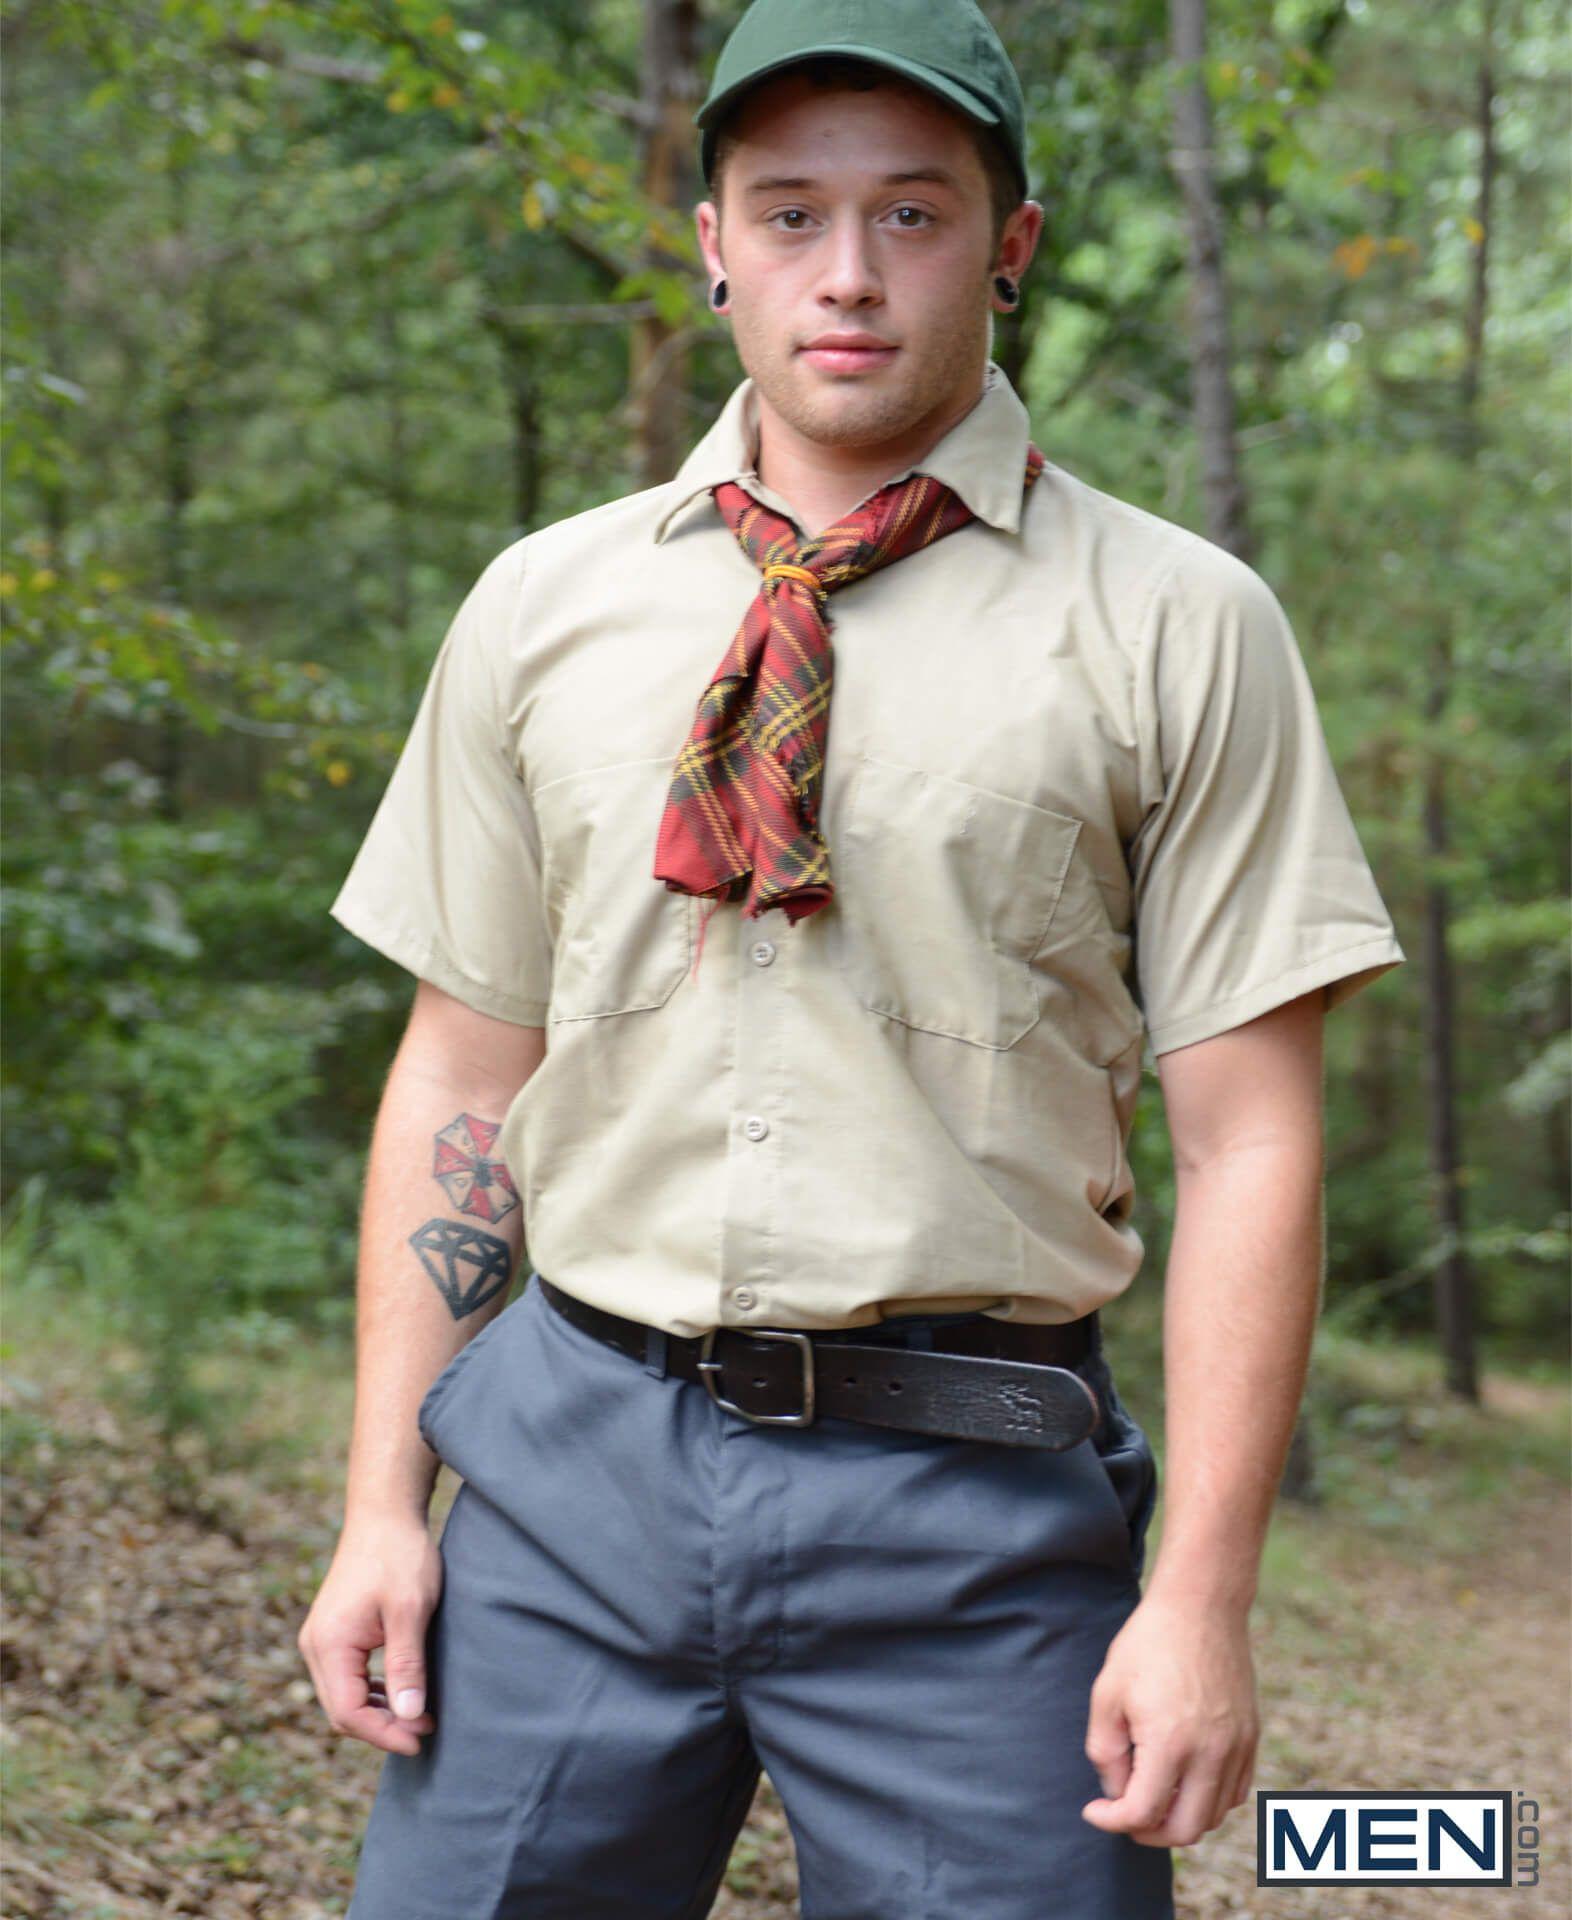 Boy scout uniform fetish pics